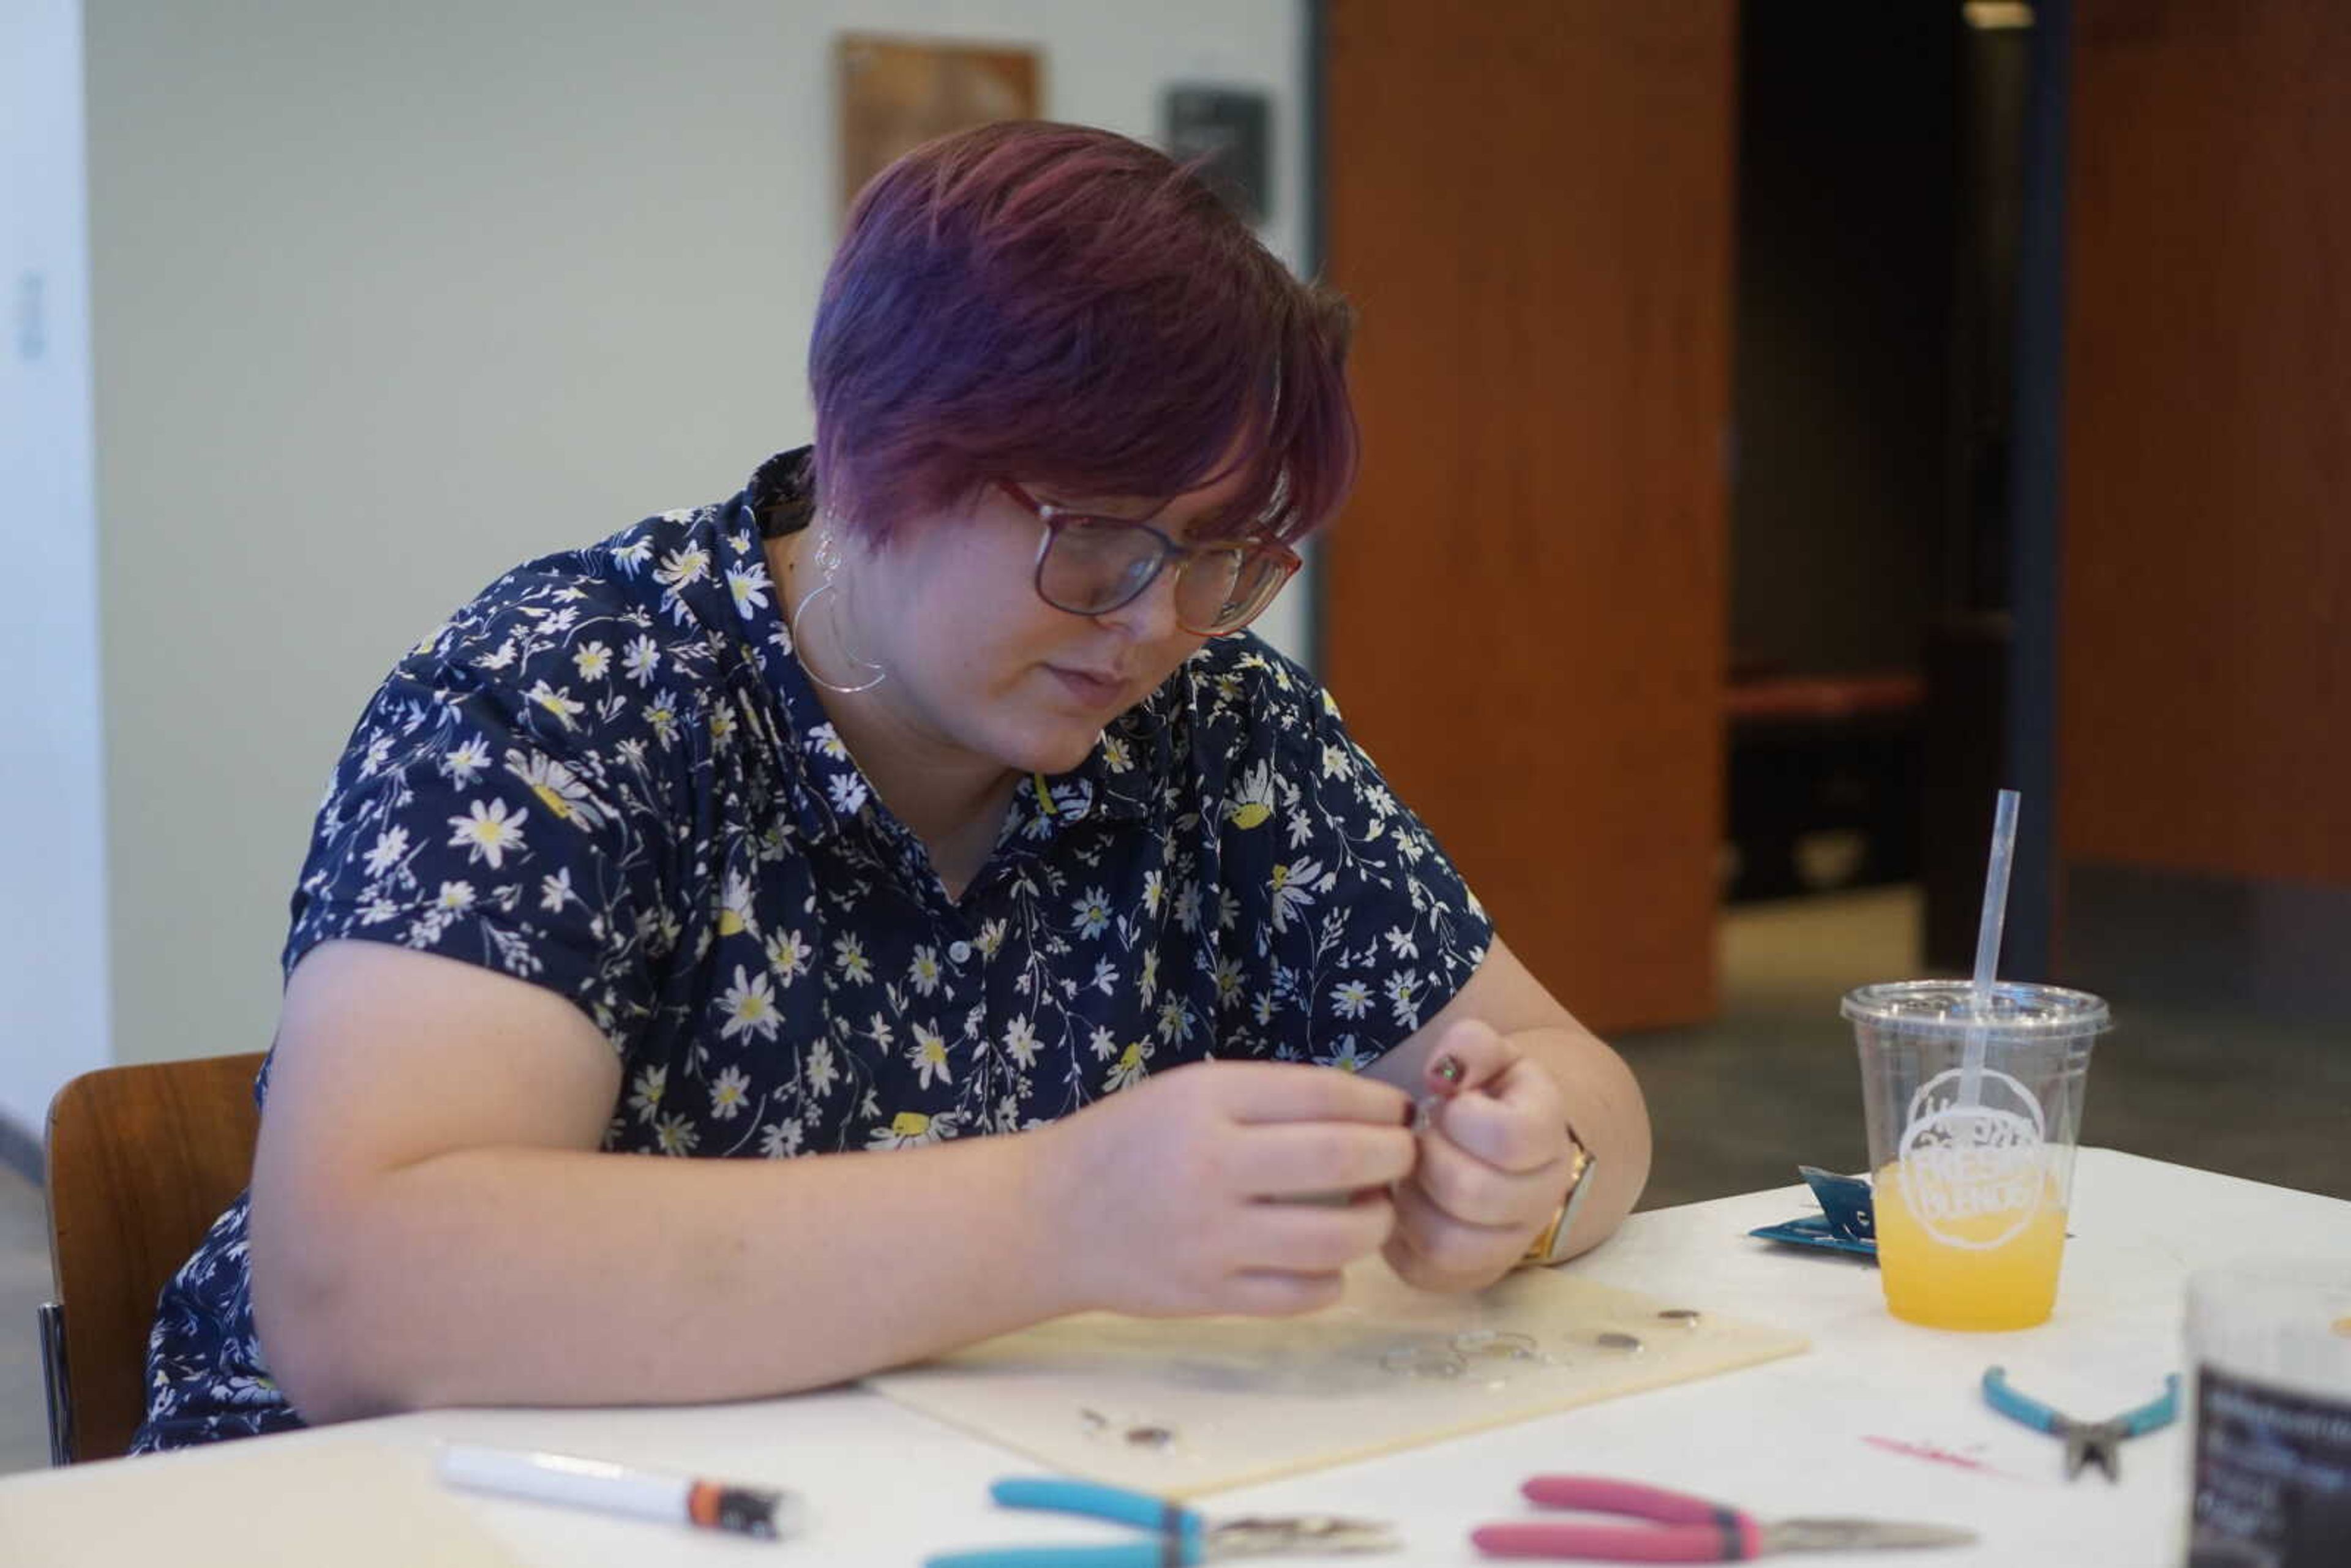 Senior art major Rebecca Byington works on her third pair of earrings.